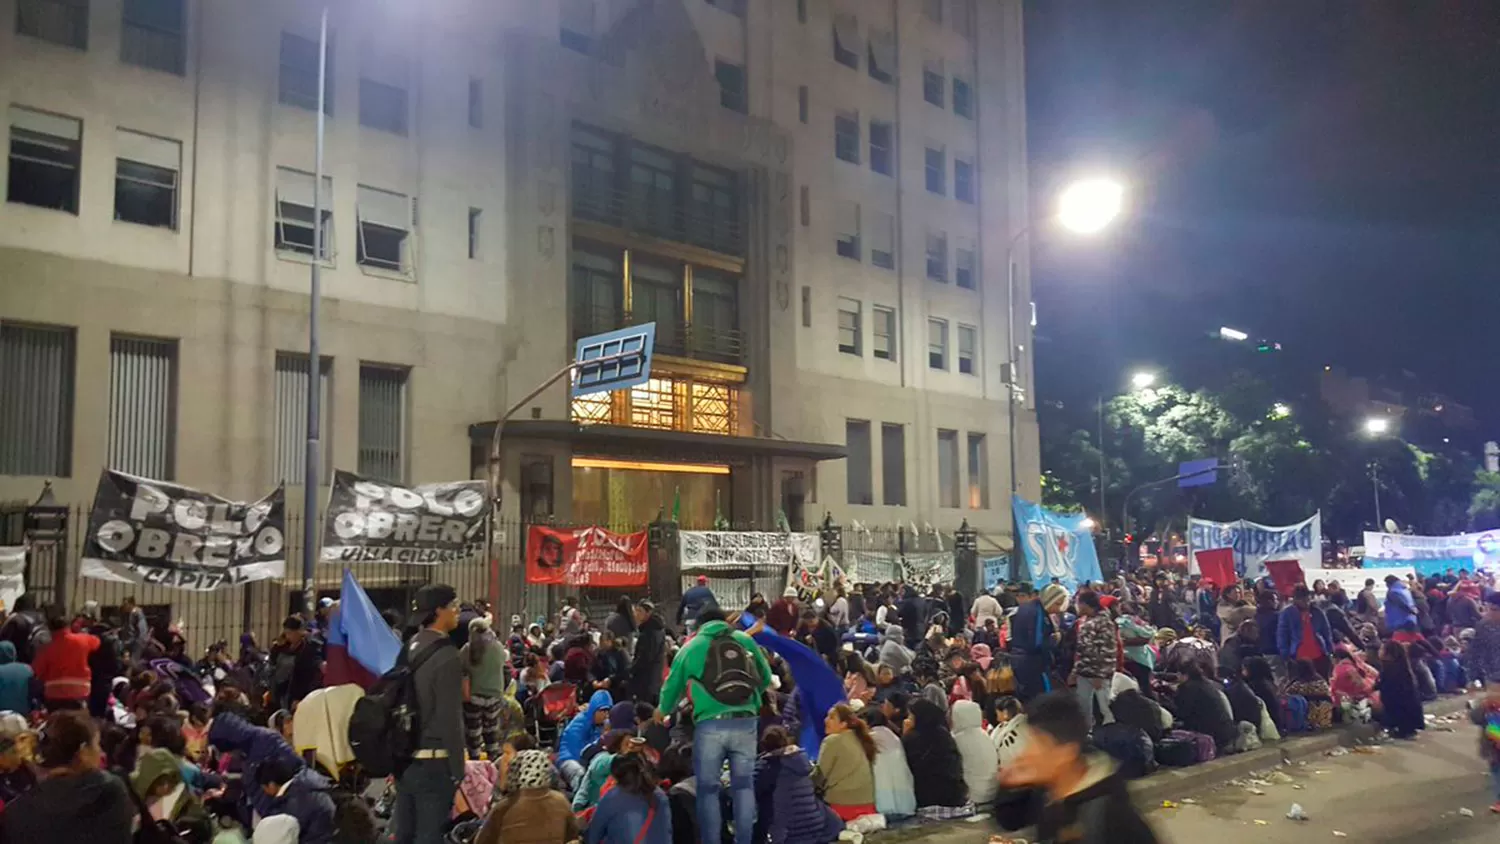 EN BUENOS AIRES. Acampan pidiendo atención de las autoridades.